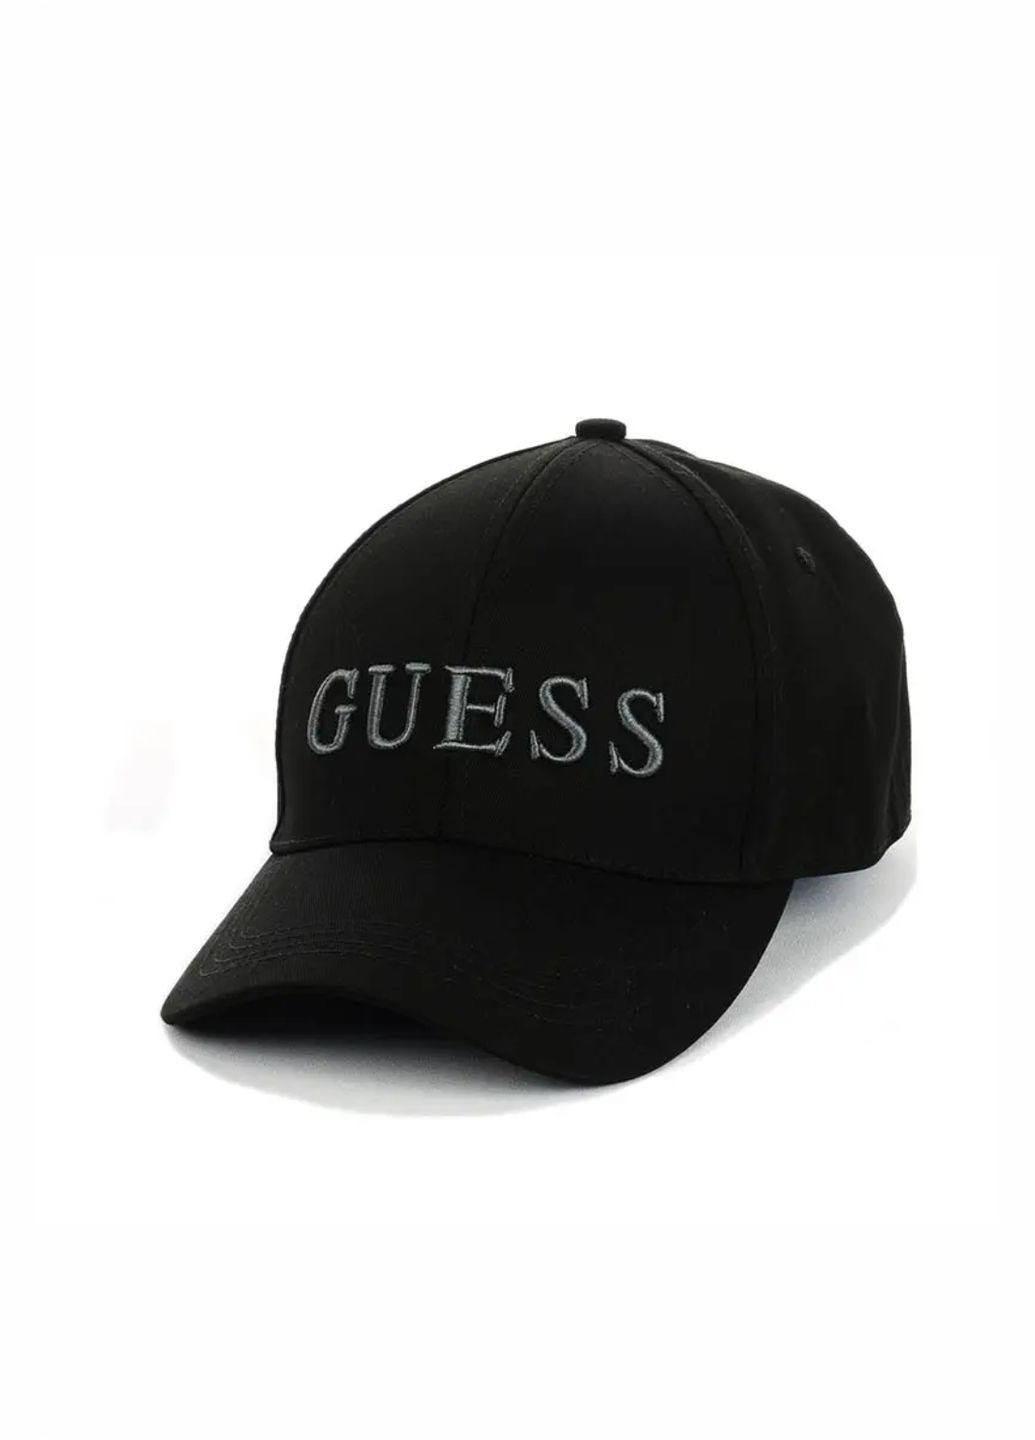 Молодежная кепка Guess S/M No Brand кепка унісекс (278279336)